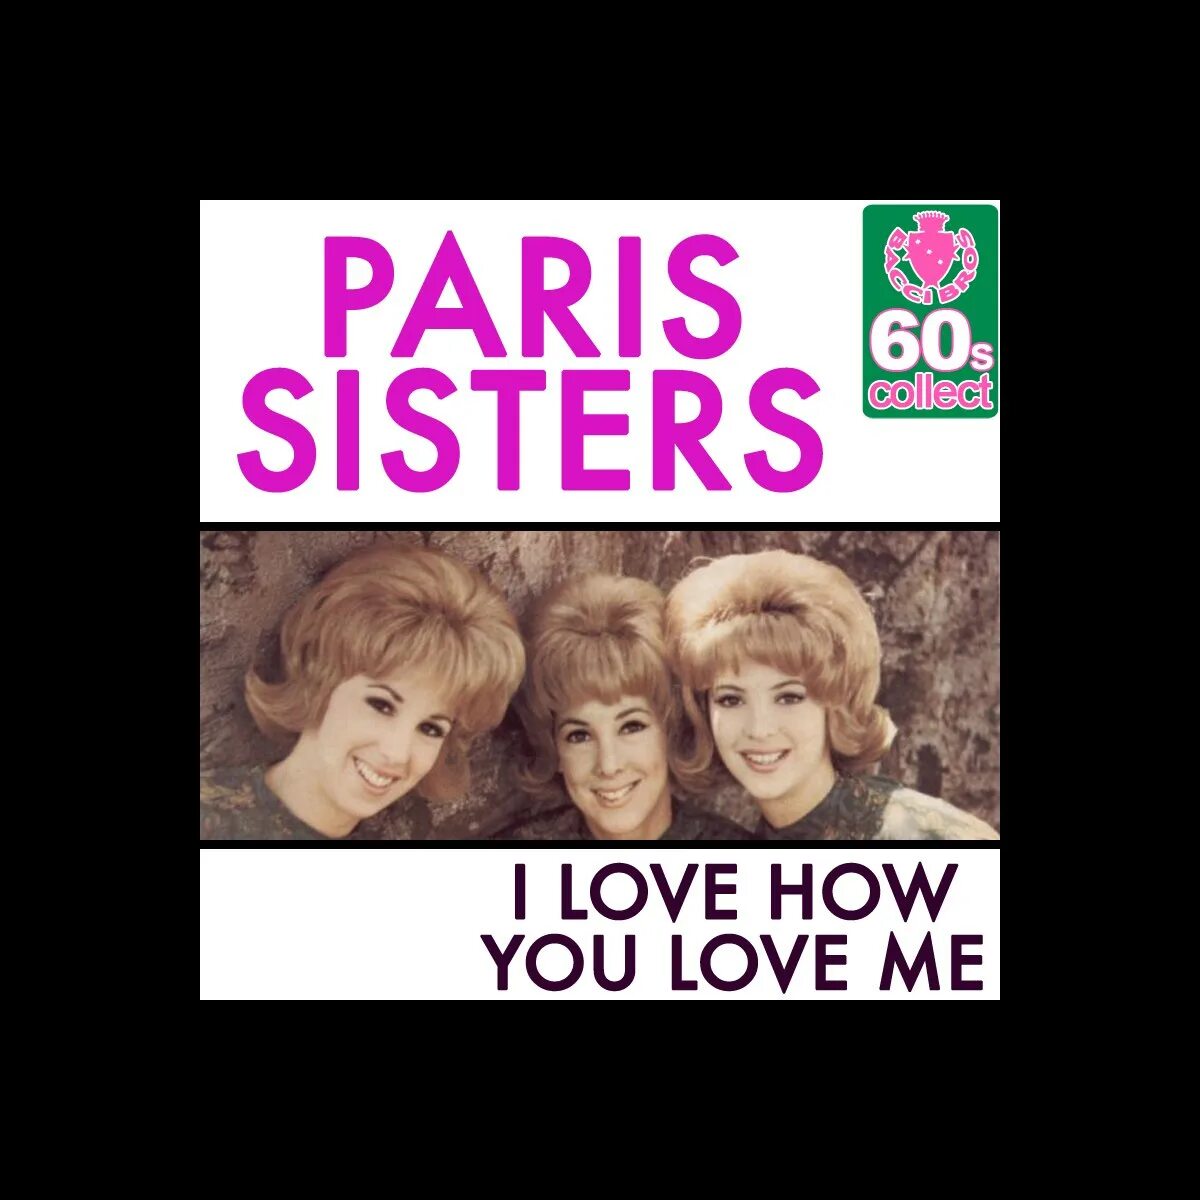 The Paris sisters. Группе Paris sisters. Paris sisters